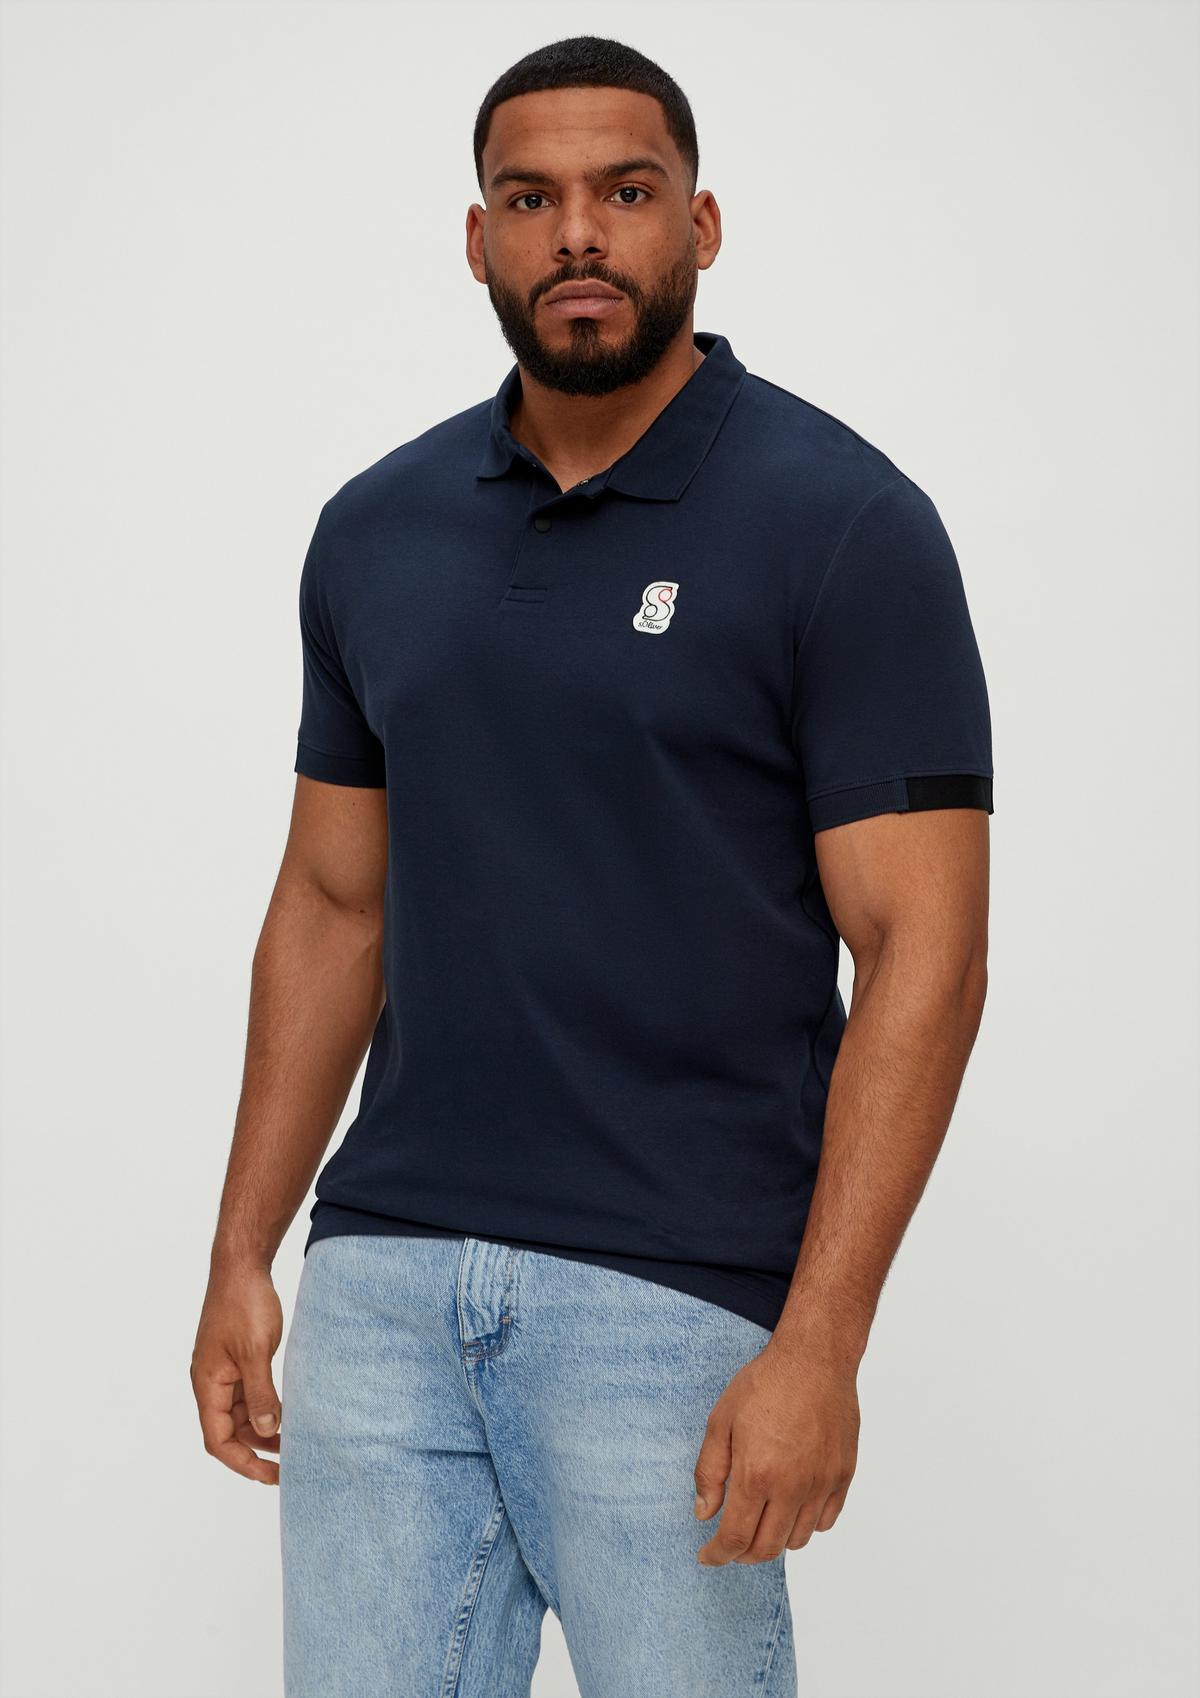 Polo shirt with a logo navy - appliqué